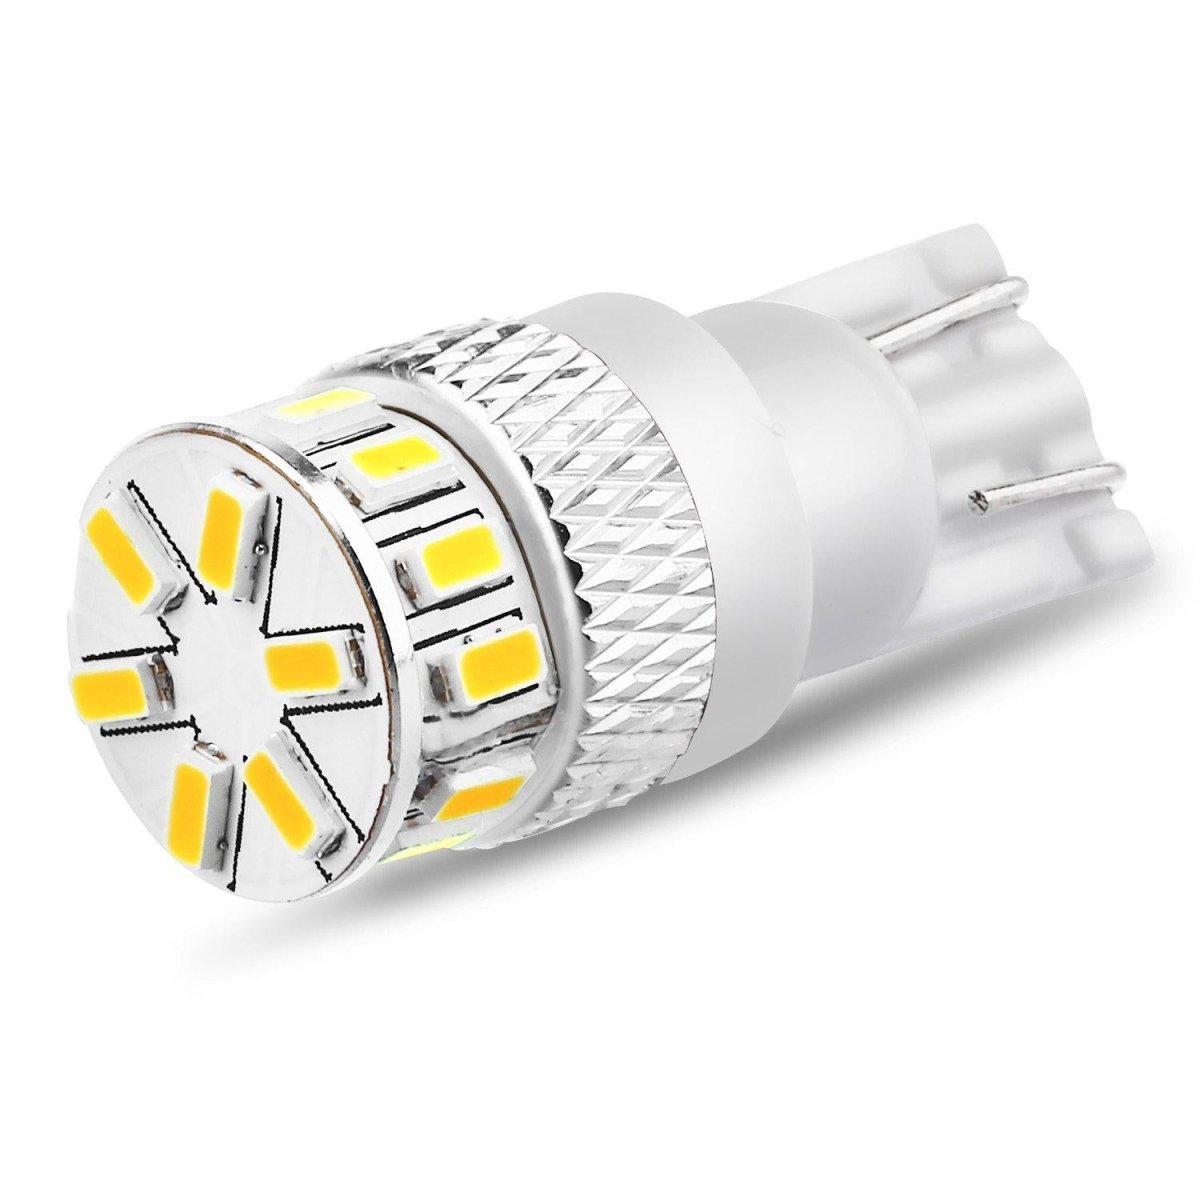 PACK P41 4 Ampoules LED / T10 (w5w) 4 leds + navette C5W 36MM 4 leds AUTOLED